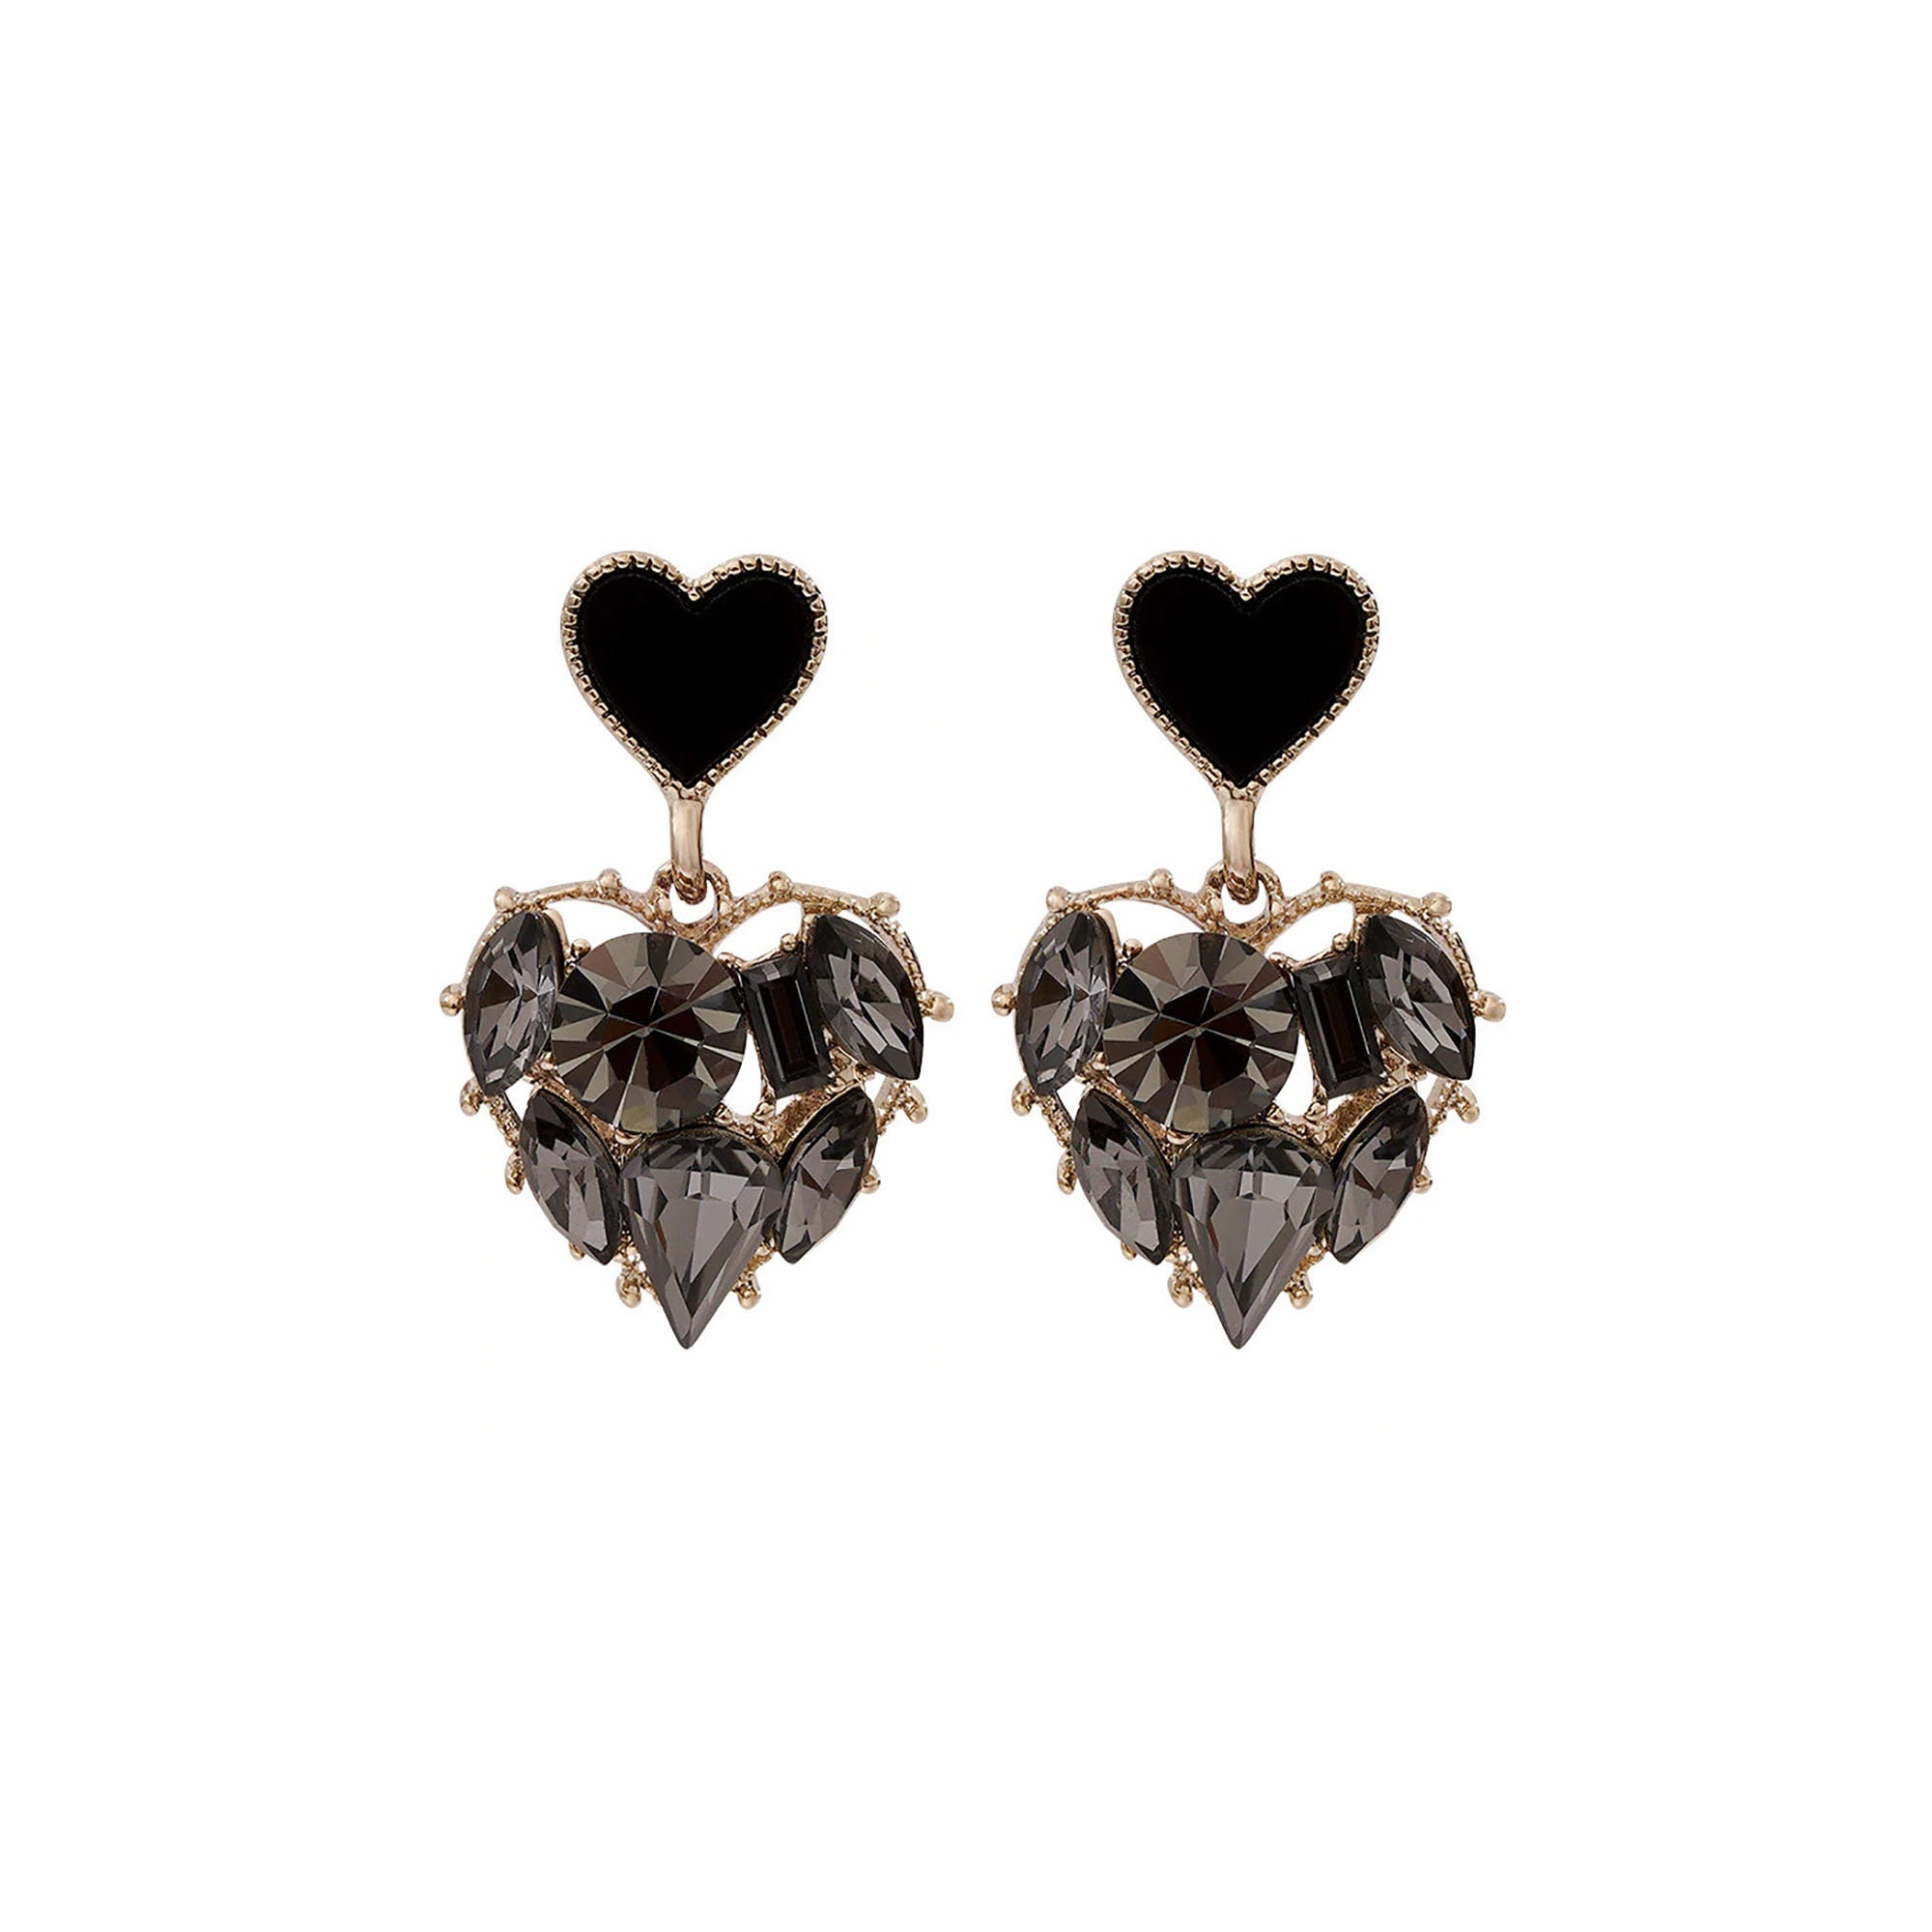 Two Hearts Earrings Hearts Double Drop Earrings Hearts | Etsy